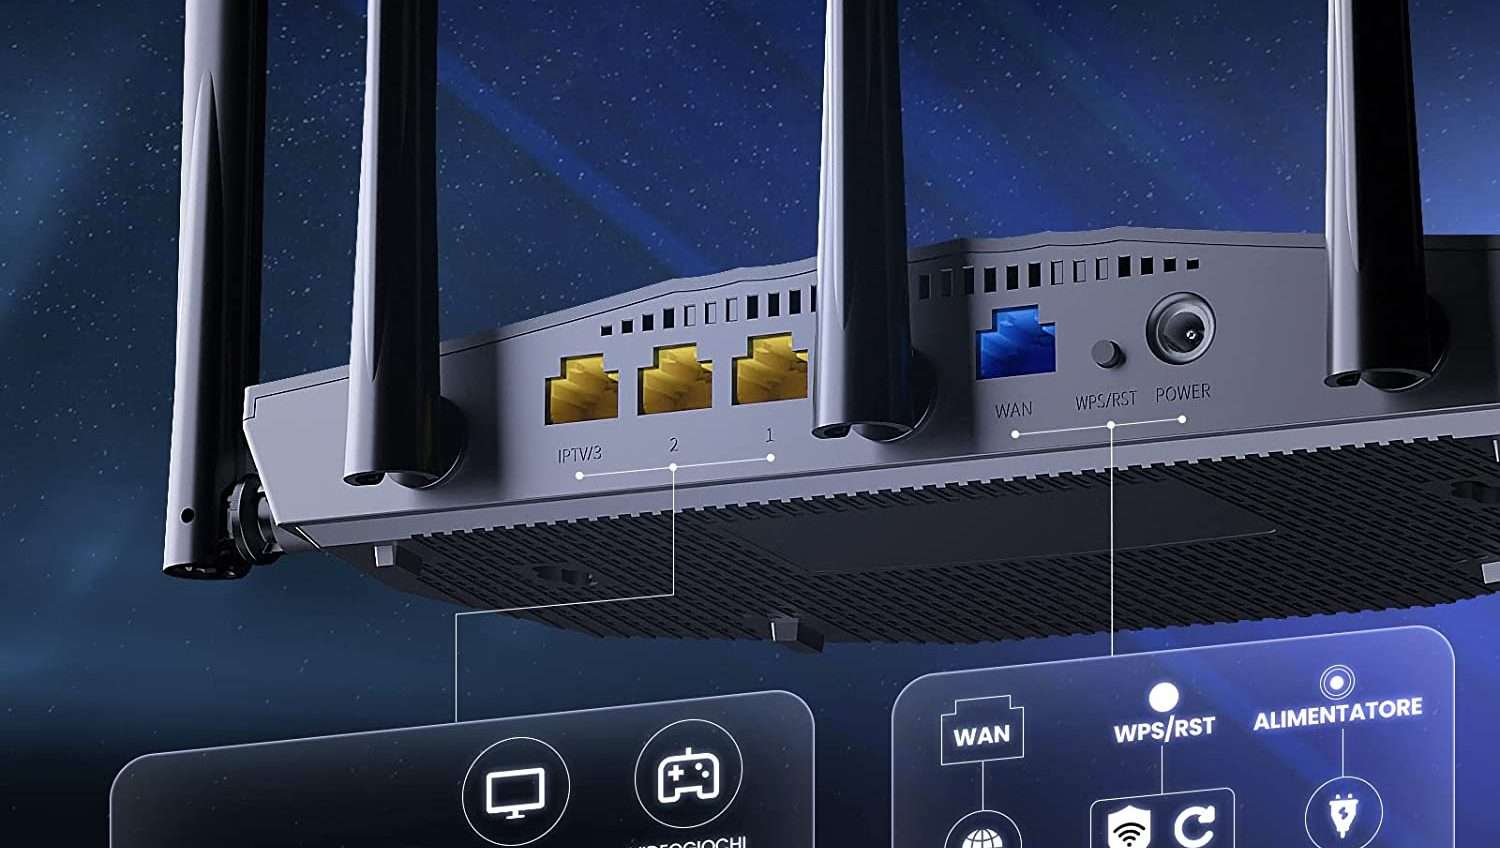 Prestazioni internet insoddisfacenti? Svolta la tua vita con questo router WI-Fi 6 in offerta su Amazon